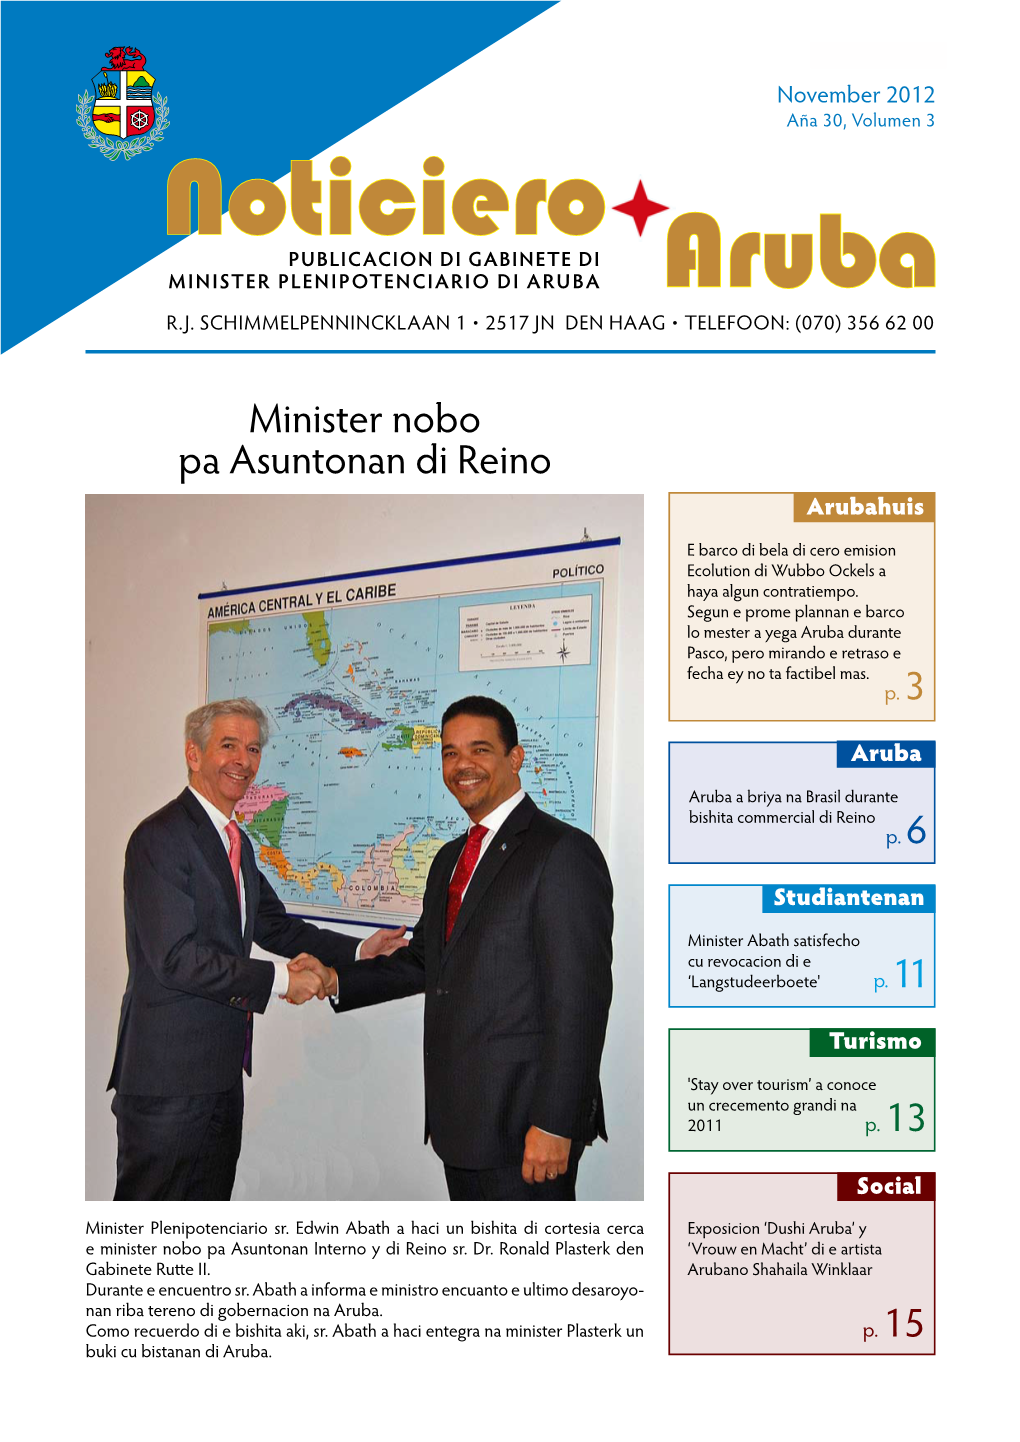 Noticiero PUBLICACION DI GABINETE DI MINISTER PLENIPOTENCIARIO DI ARUBA Aruba R.J